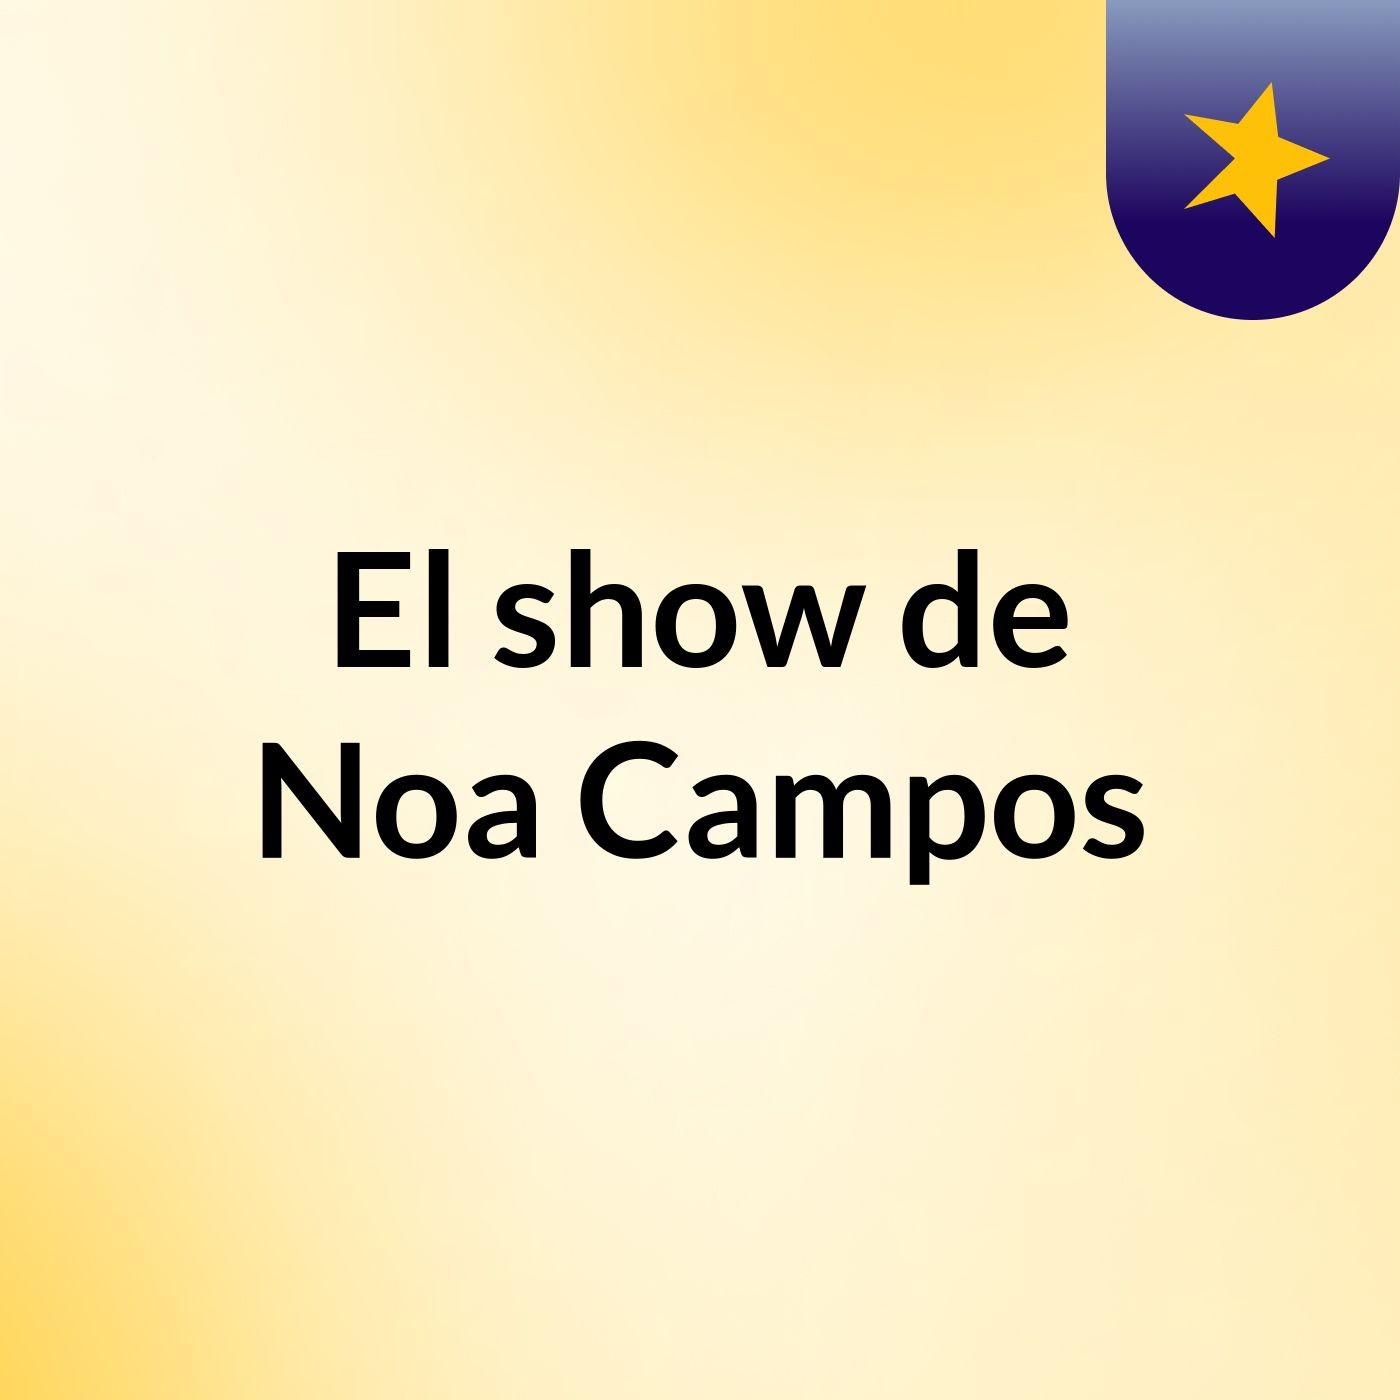 El show de Noa Campos